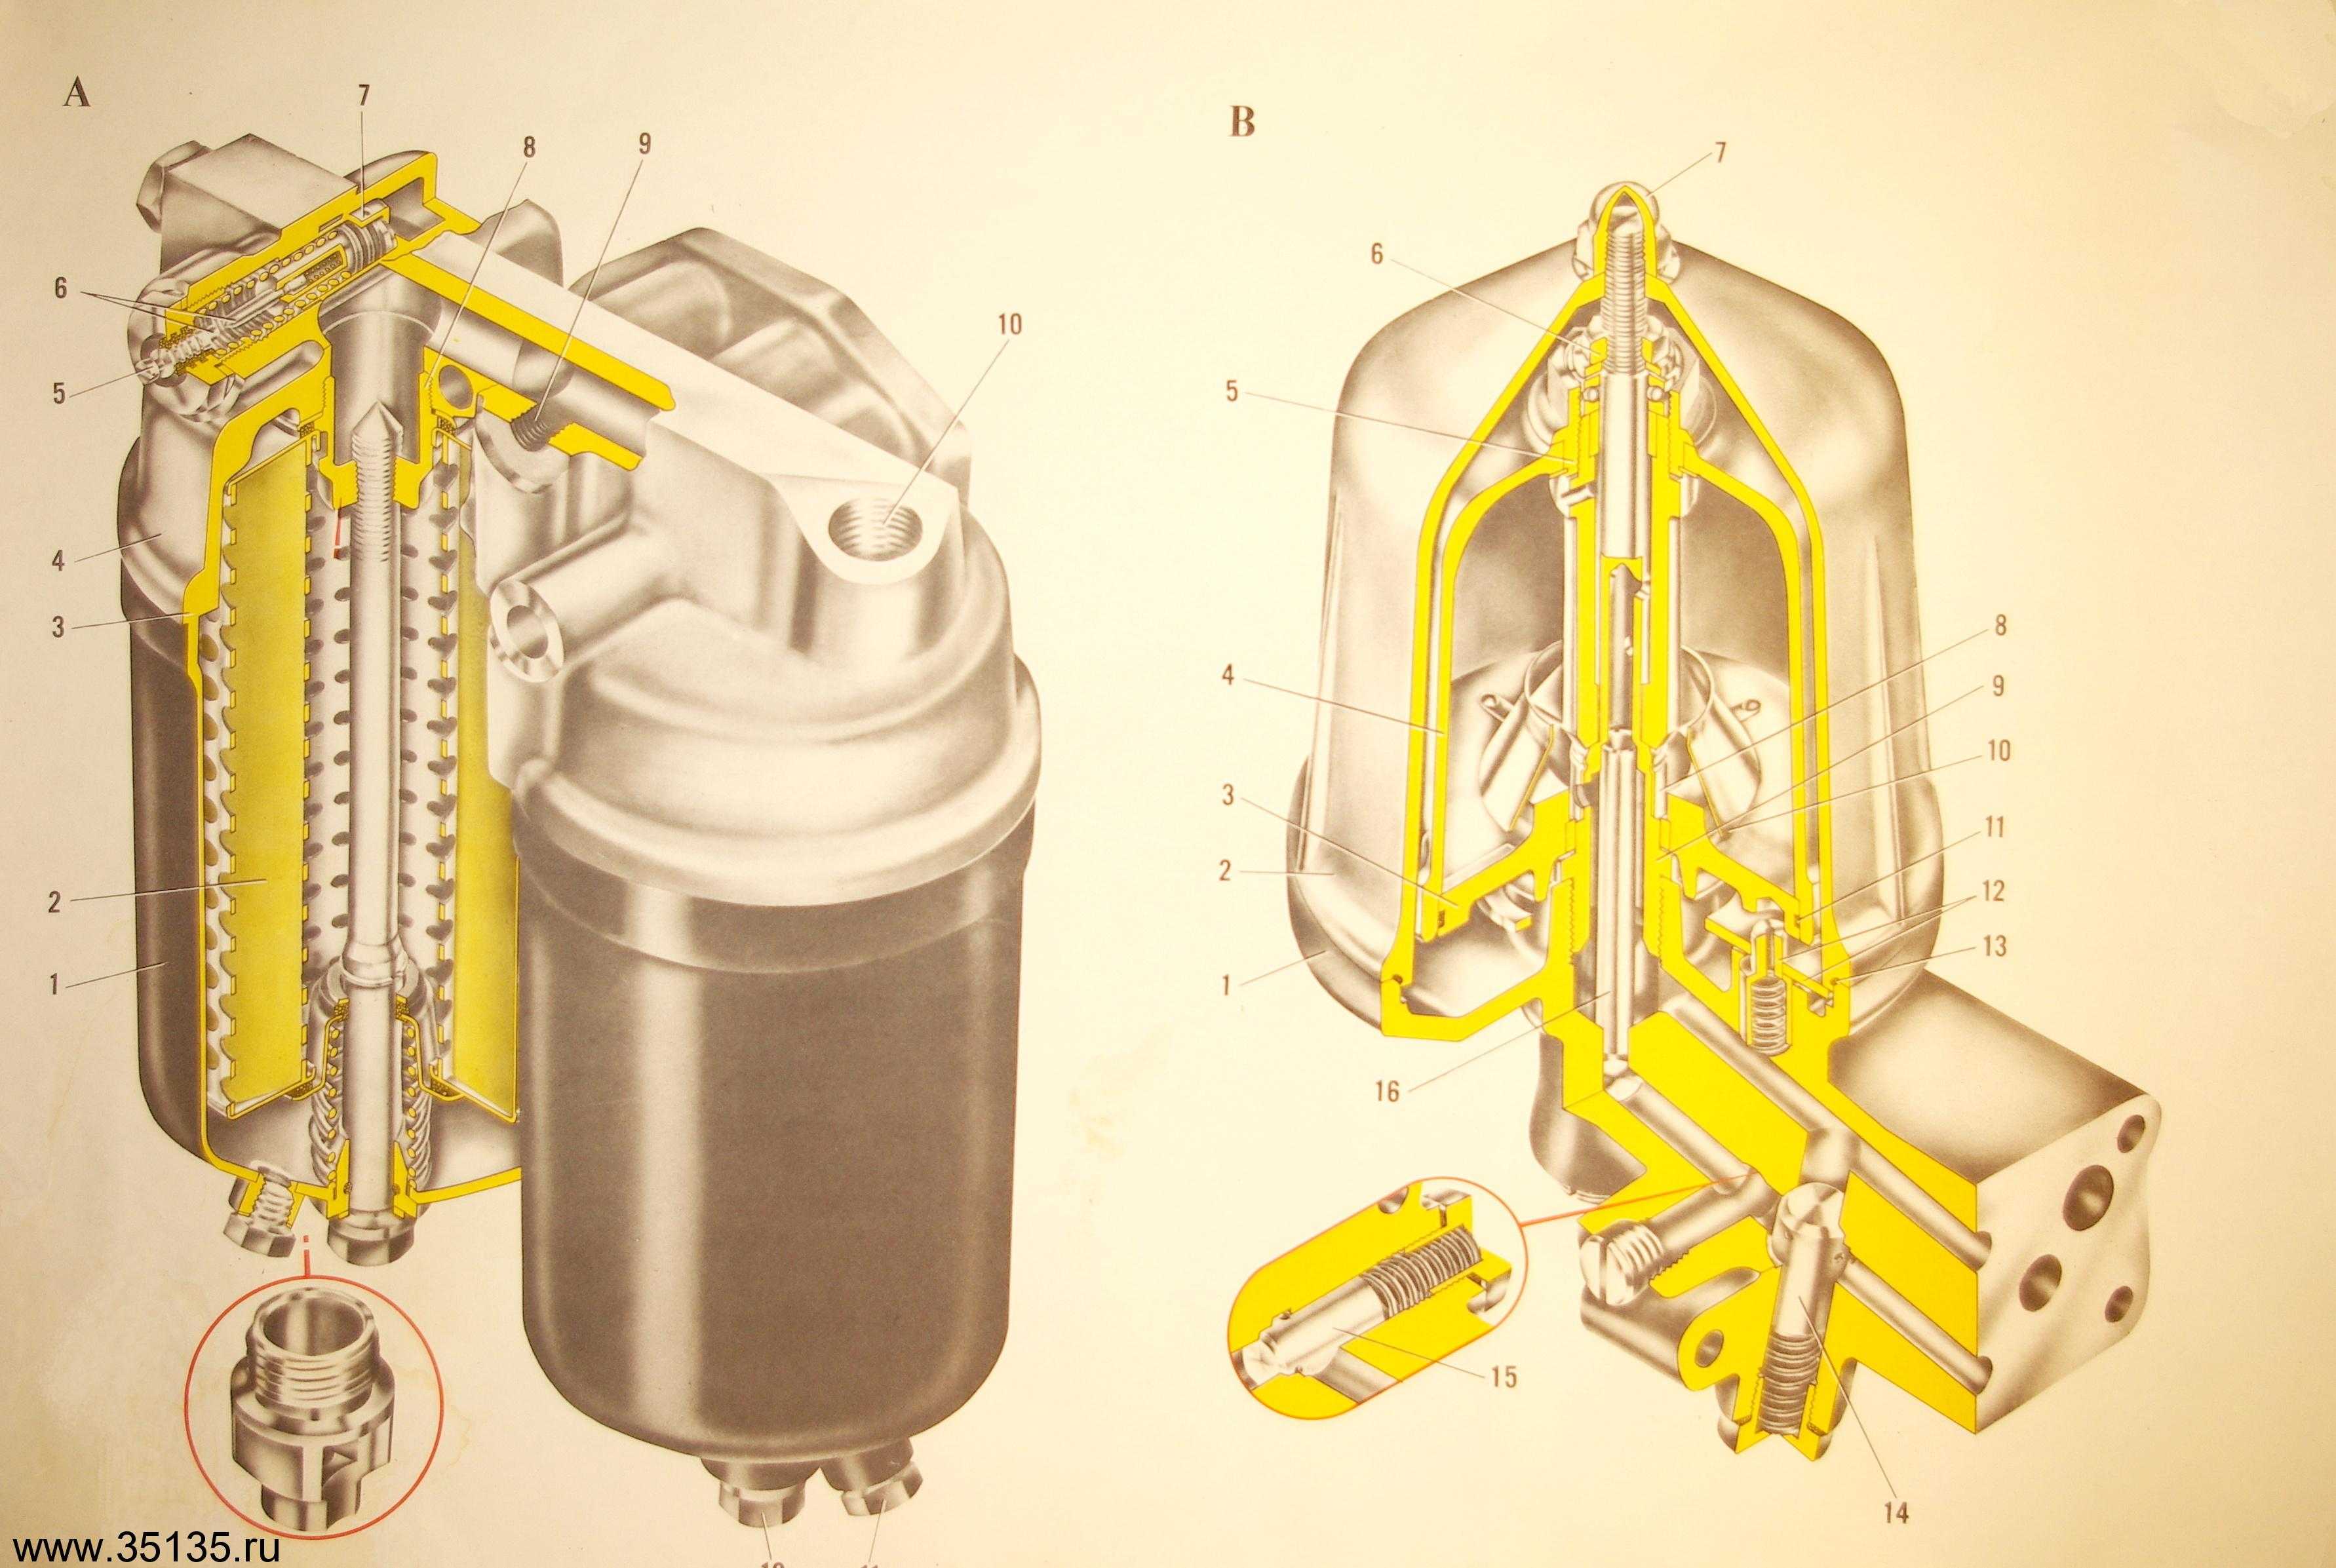 Фильтр центробежной очистки масла КАМАЗ 740